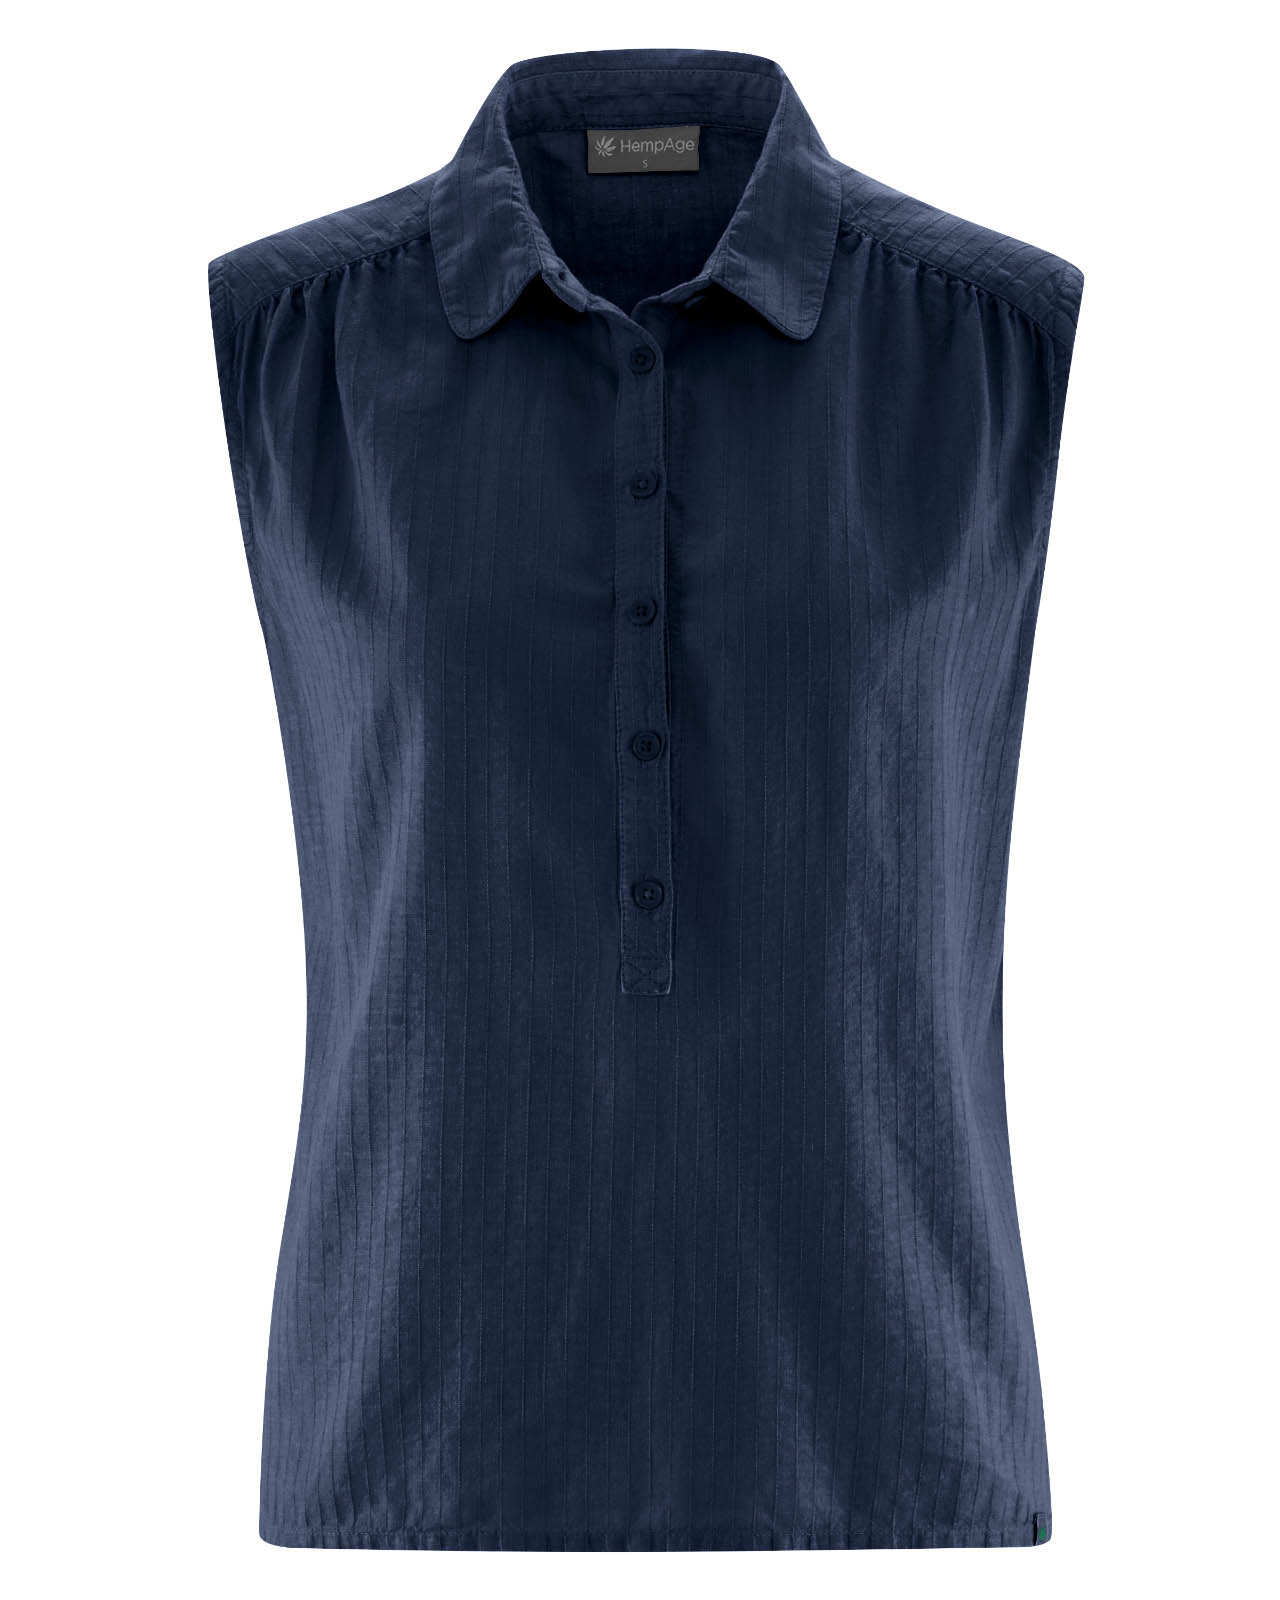 blouse-coton-bio_DH194_navy